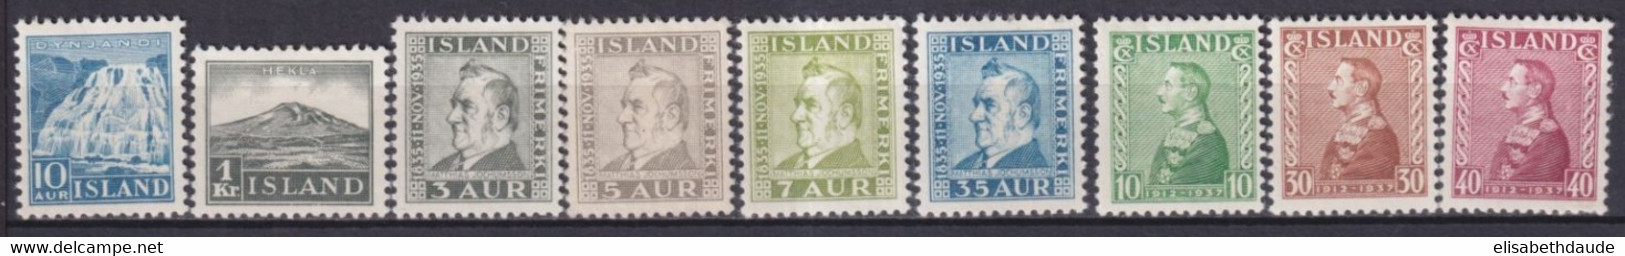 ISLANDE - 1935/1937 - YVERT N° 158/166 * MLH - COTE = 109 EUR. - Neufs